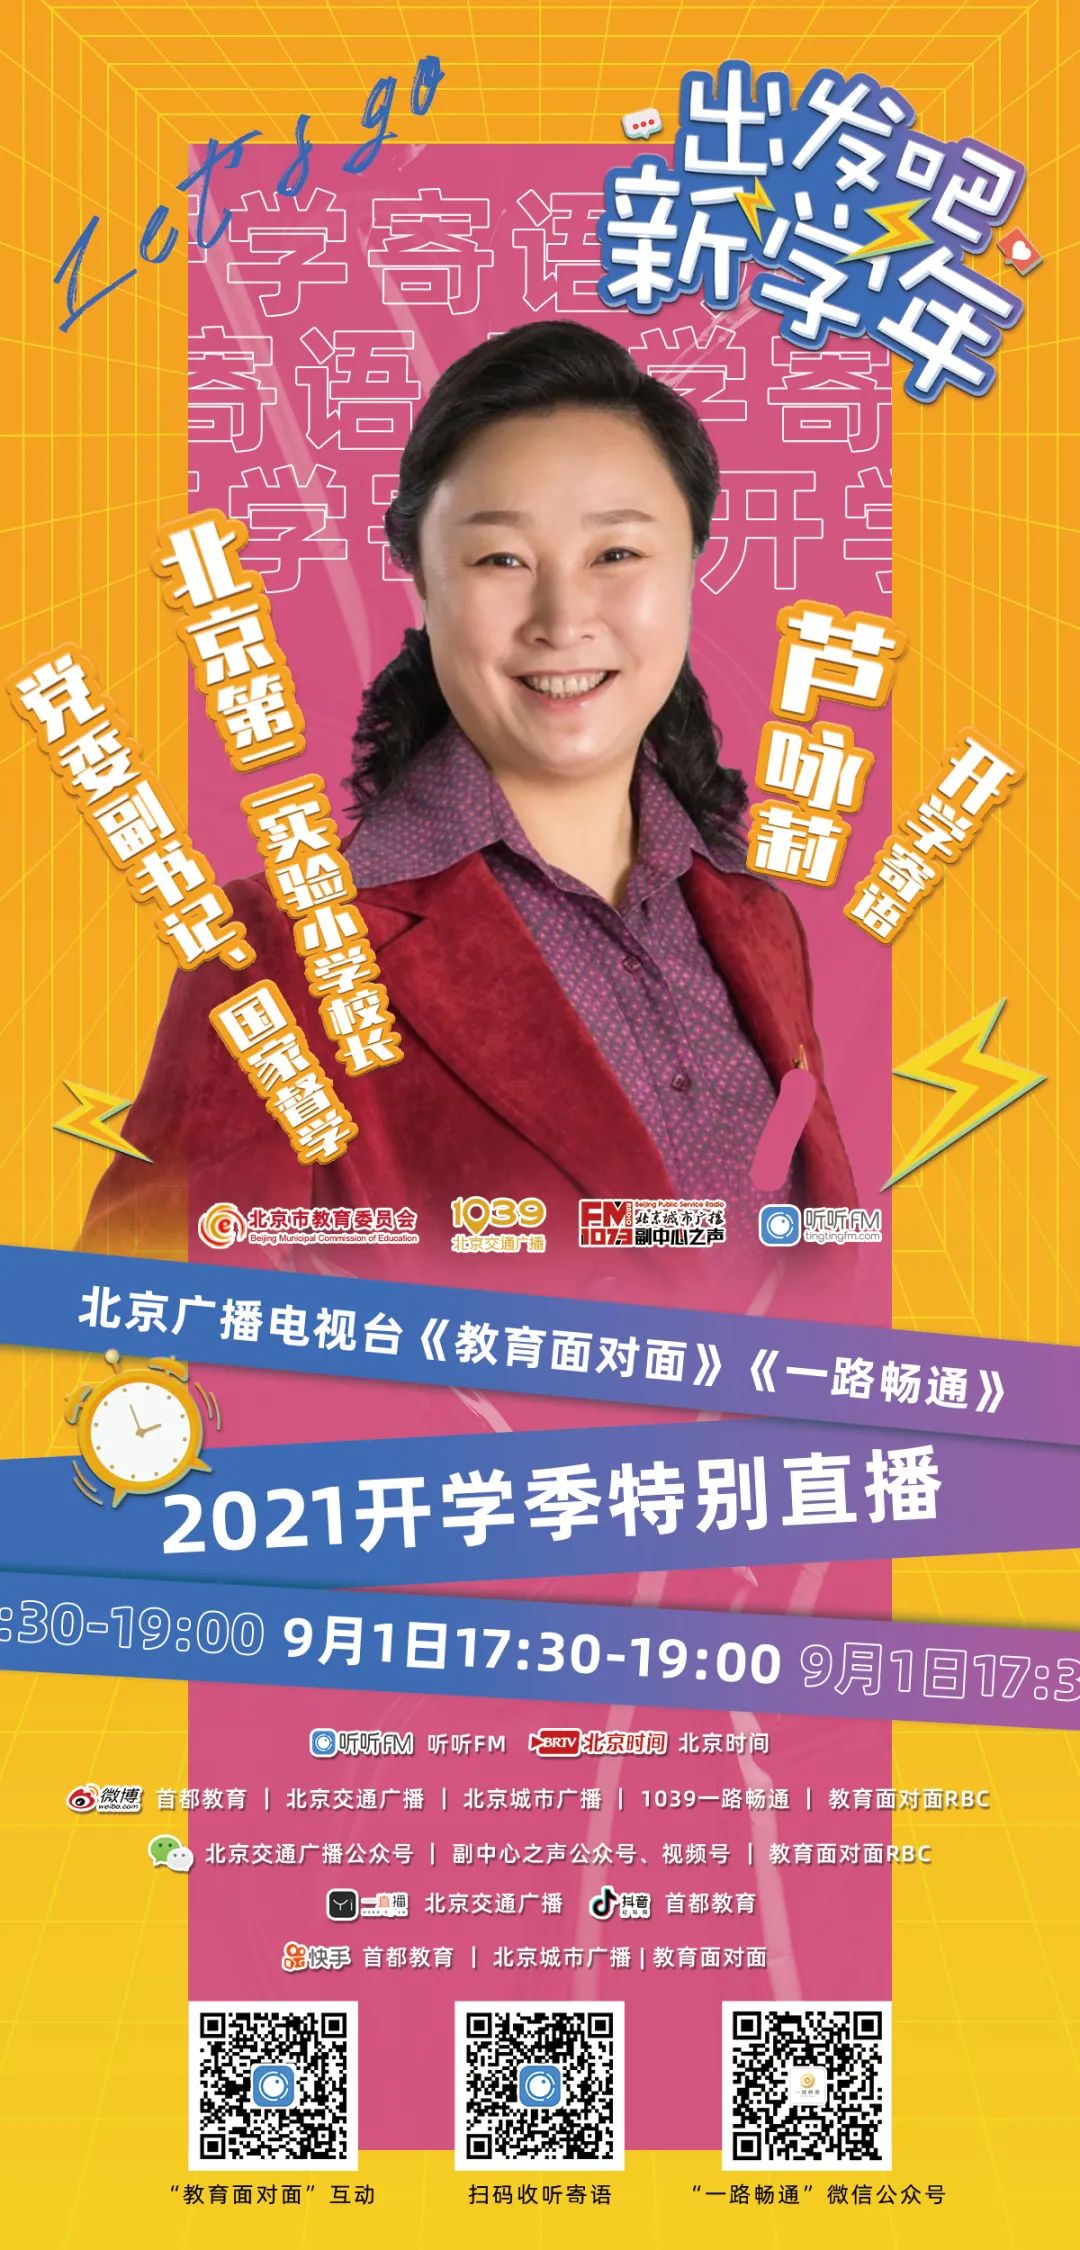 2021出发吧，新学年！——北京广播电视台《教育面对面》X《一路畅通》2021开学季特别直播